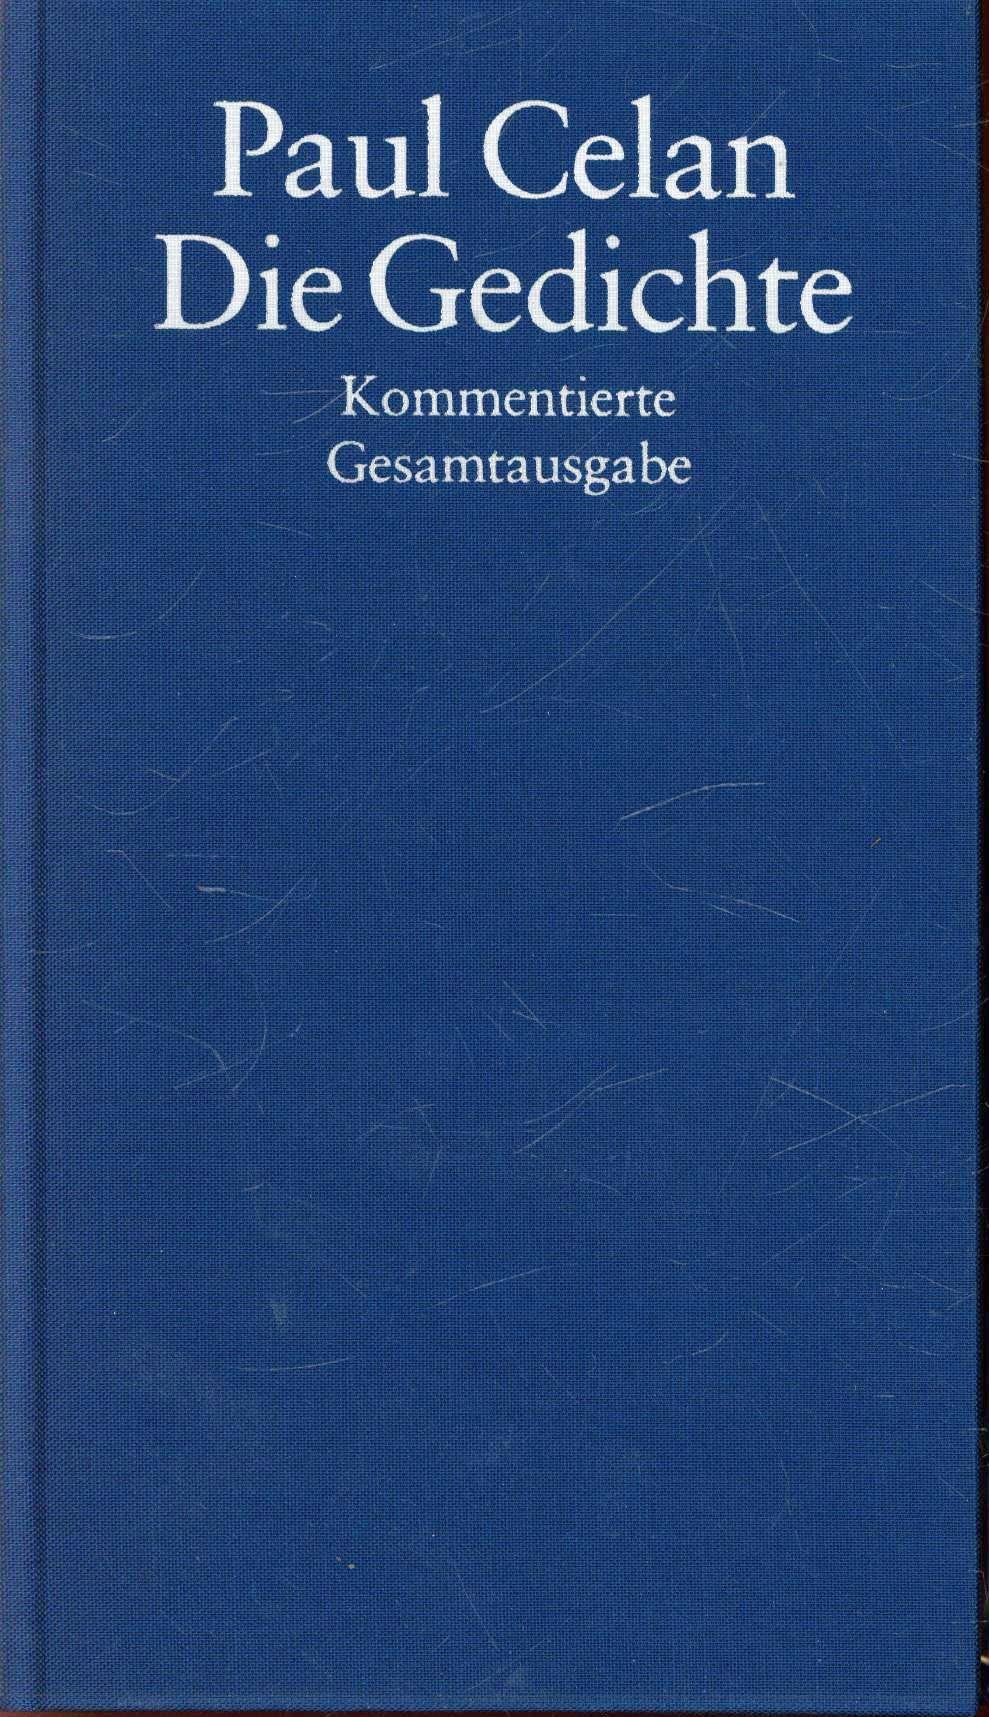 Die Gedichte. Kommentierte Gesamtausgabe - Wiedemann, Barbara (Hrsg.), Celan, Paul, Wiedemann, Barbara (commentary)